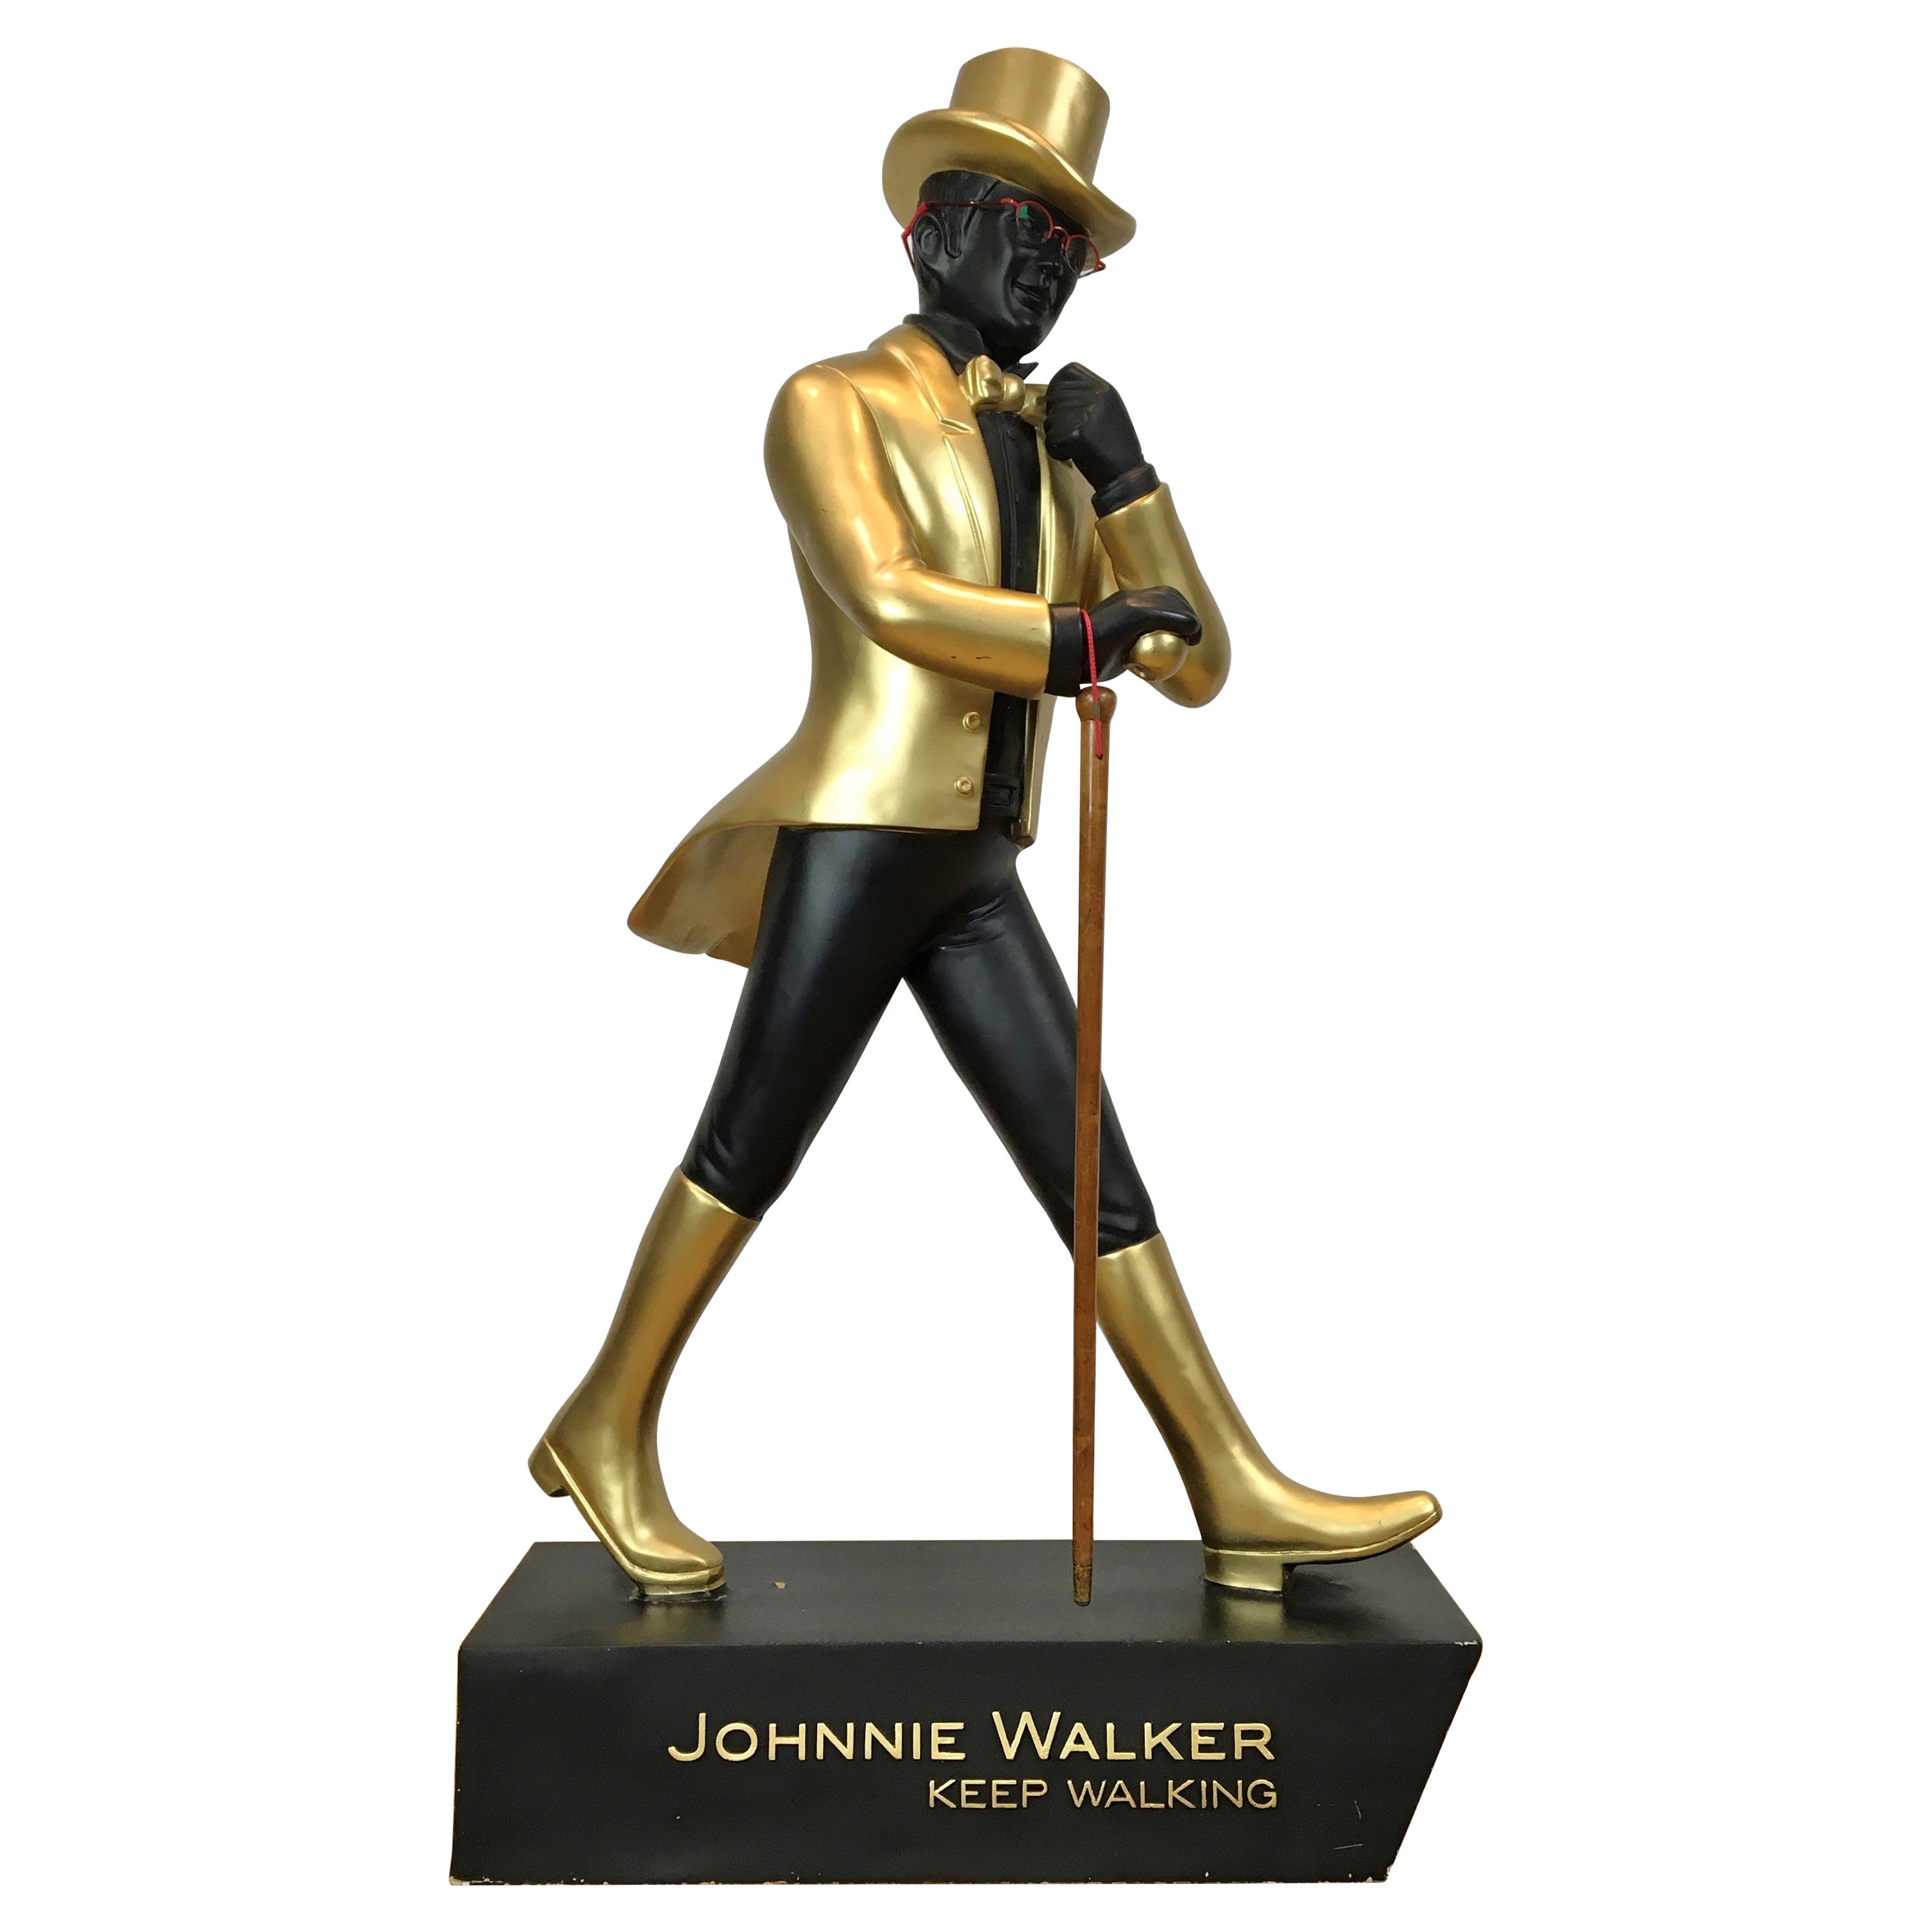 Johnnie Walker Shop Advertising Display Man, Werbeschrank in Großformat